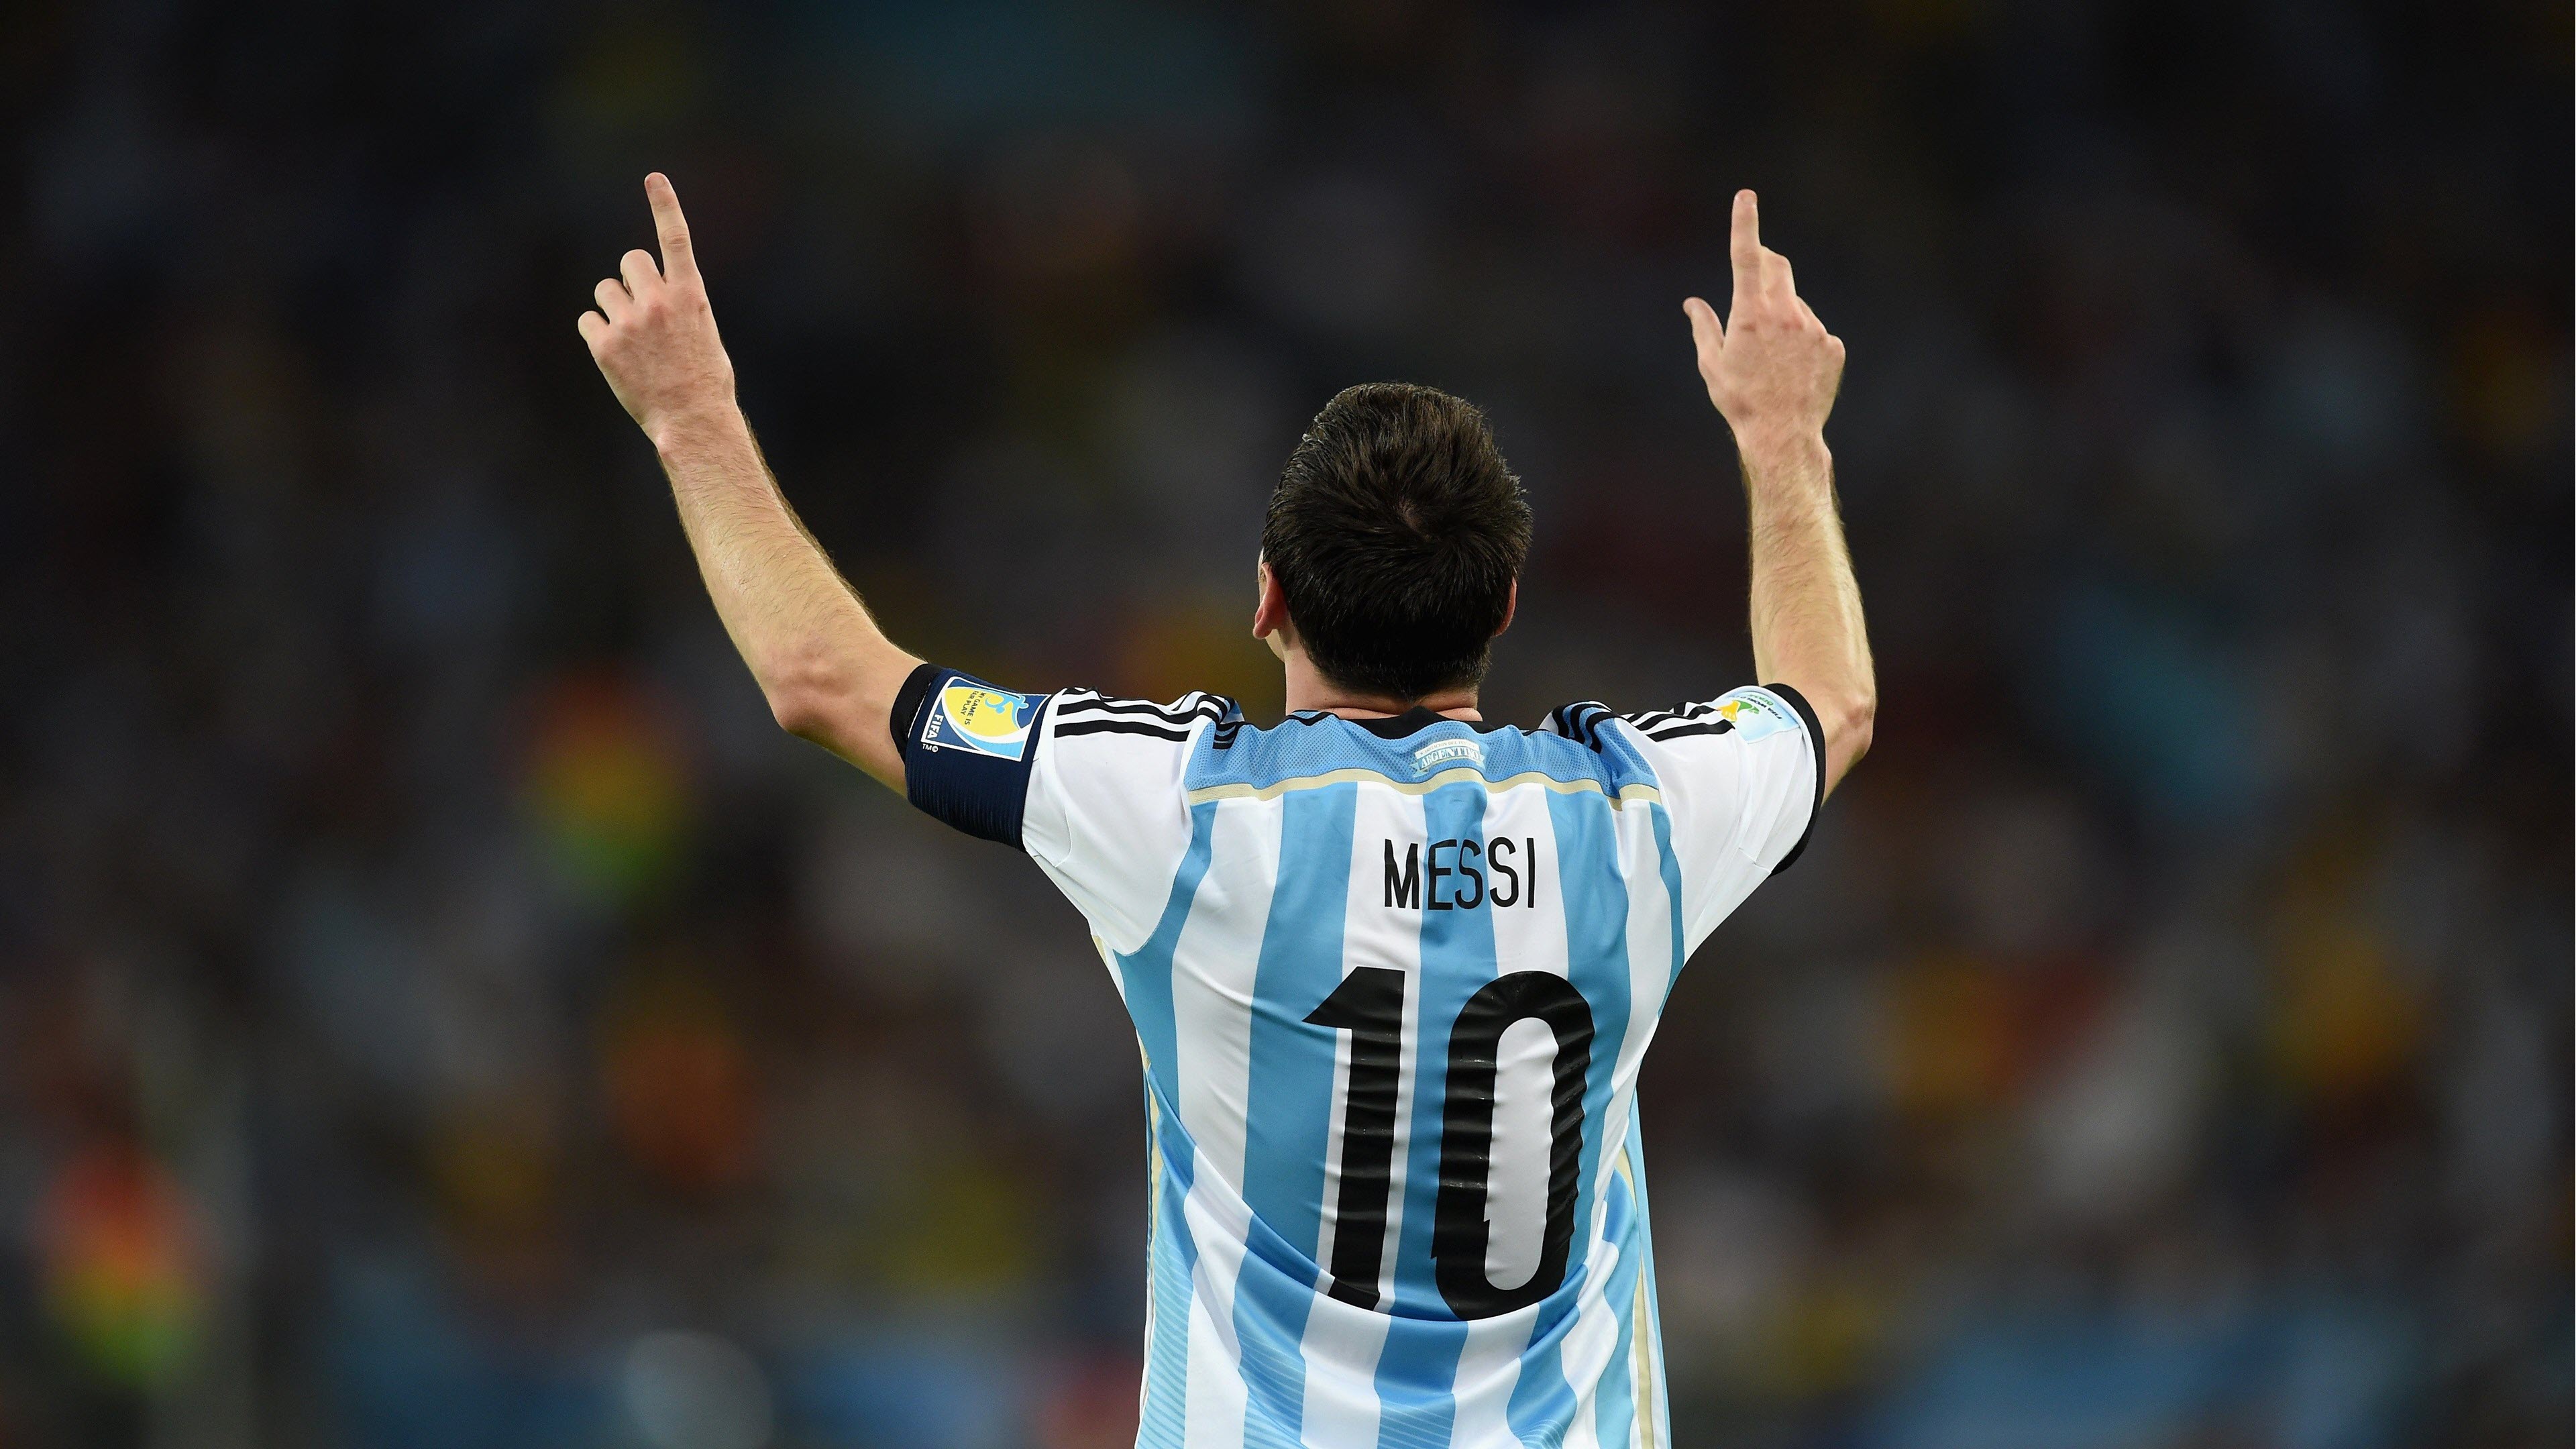 Bộ sưu tập ảnh Messi 4K: Bộ sưu tập ảnh Messi 4K chất lượng cực cao sẽ làm cho màn hình của bạn trở nên sống động hơn bao giờ hết. Hãy khám phá những khoảnh khắc đặc biệt của siêu sao bóng đá này qua bộ sưu tập ảnh đầy sáng tạo và độc đáo.